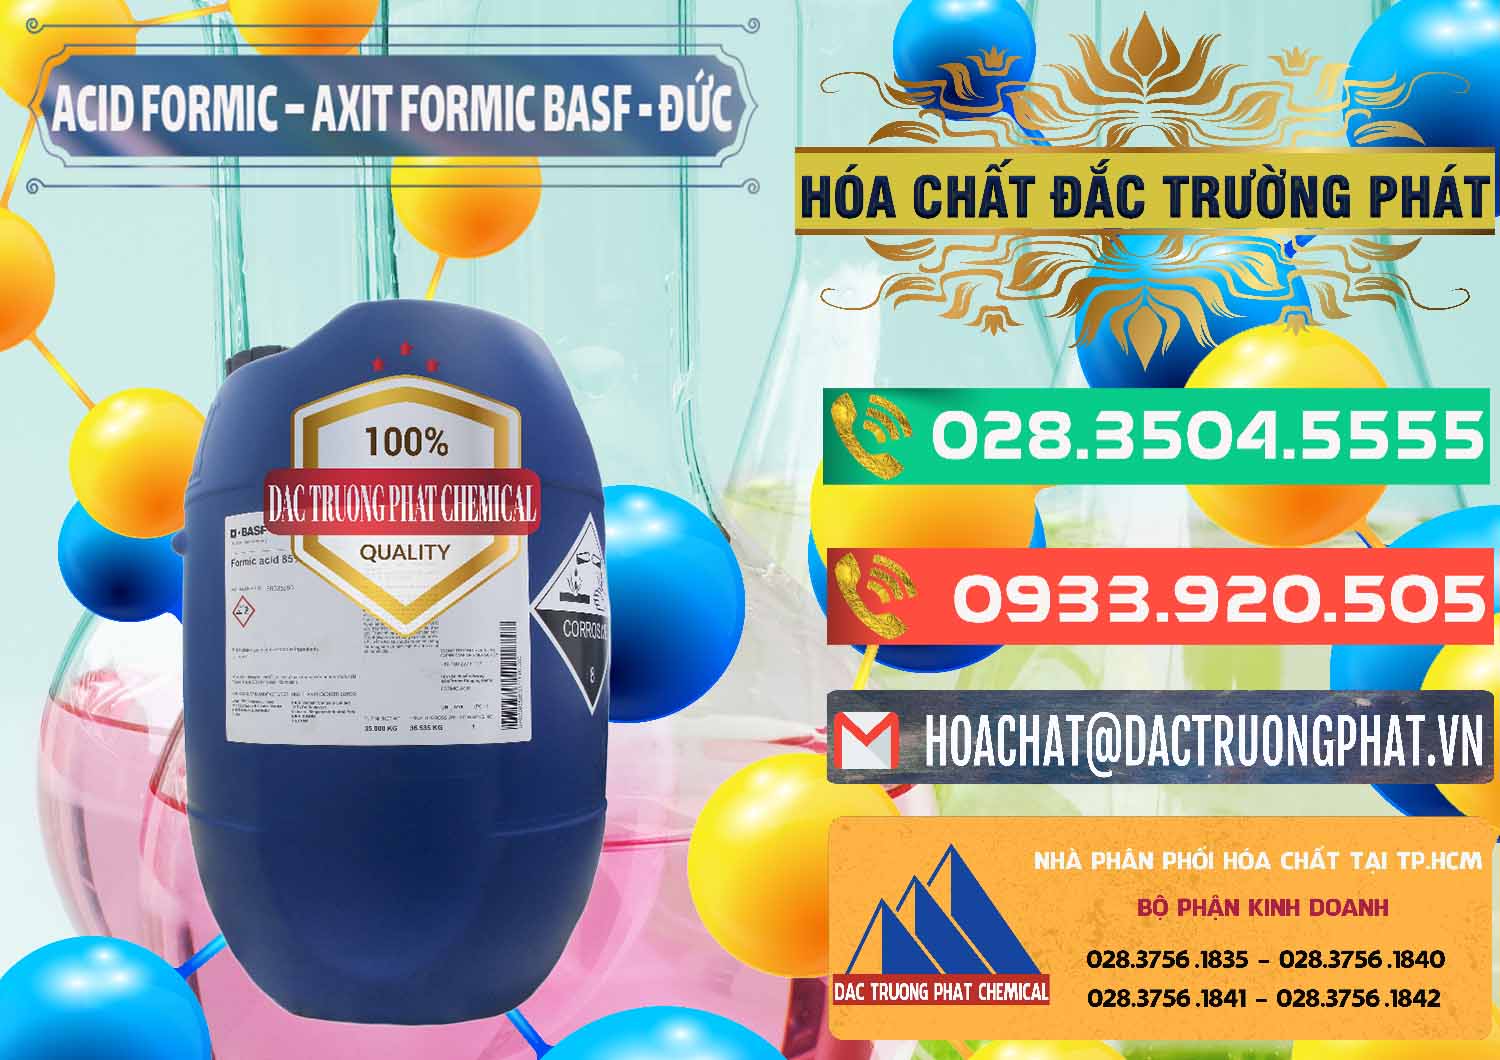 Nơi chuyên nhập khẩu và bán Acid Formic - Axit Formic BASF Đức Germany - 0028 - Nhà nhập khẩu & phân phối hóa chất tại TP.HCM - congtyhoachat.com.vn